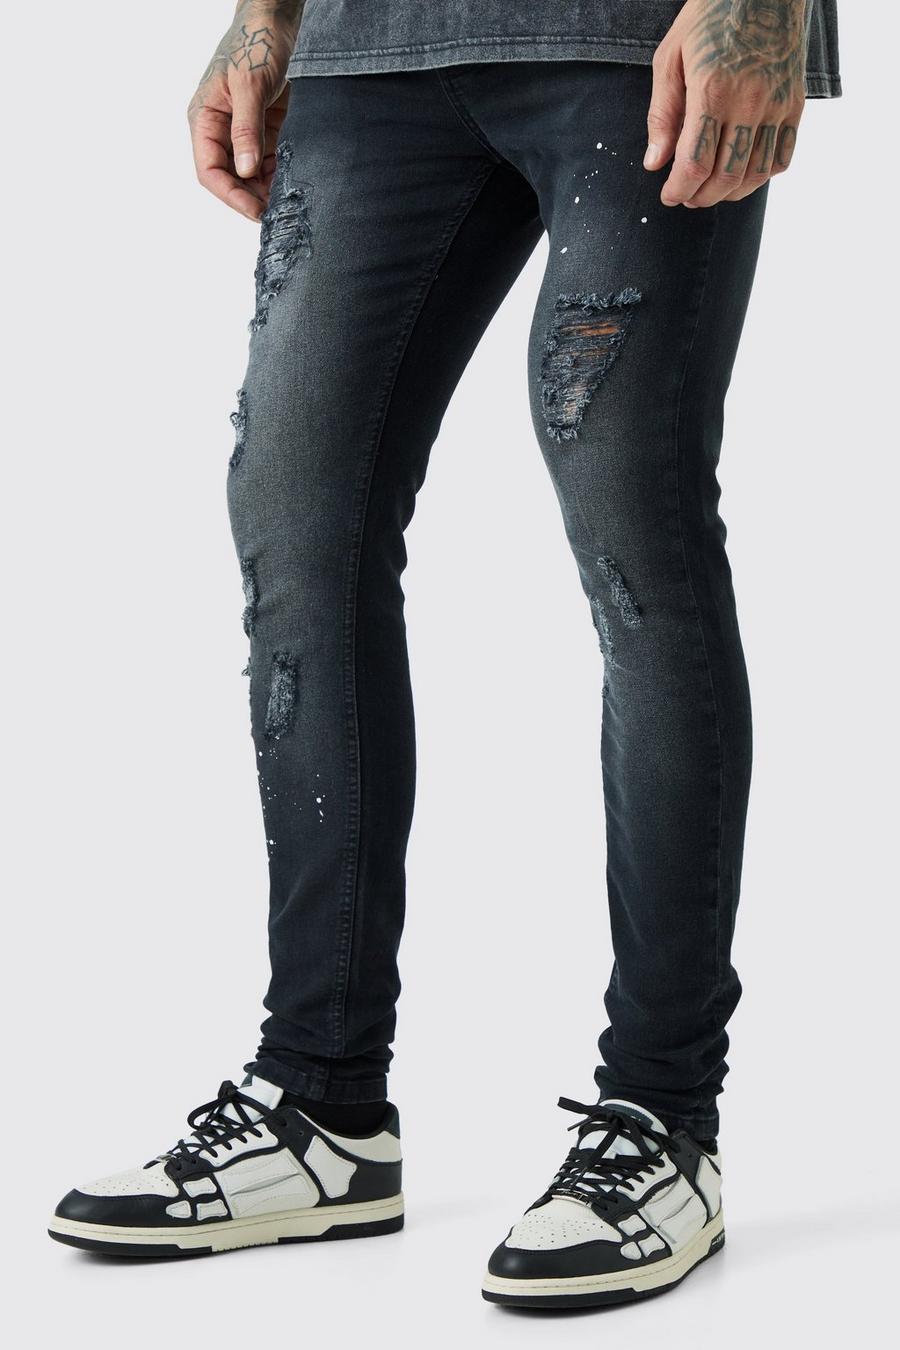 Jeans Tall Super Skinny Fit effetto smagliato con schizzi di colore, Washed black